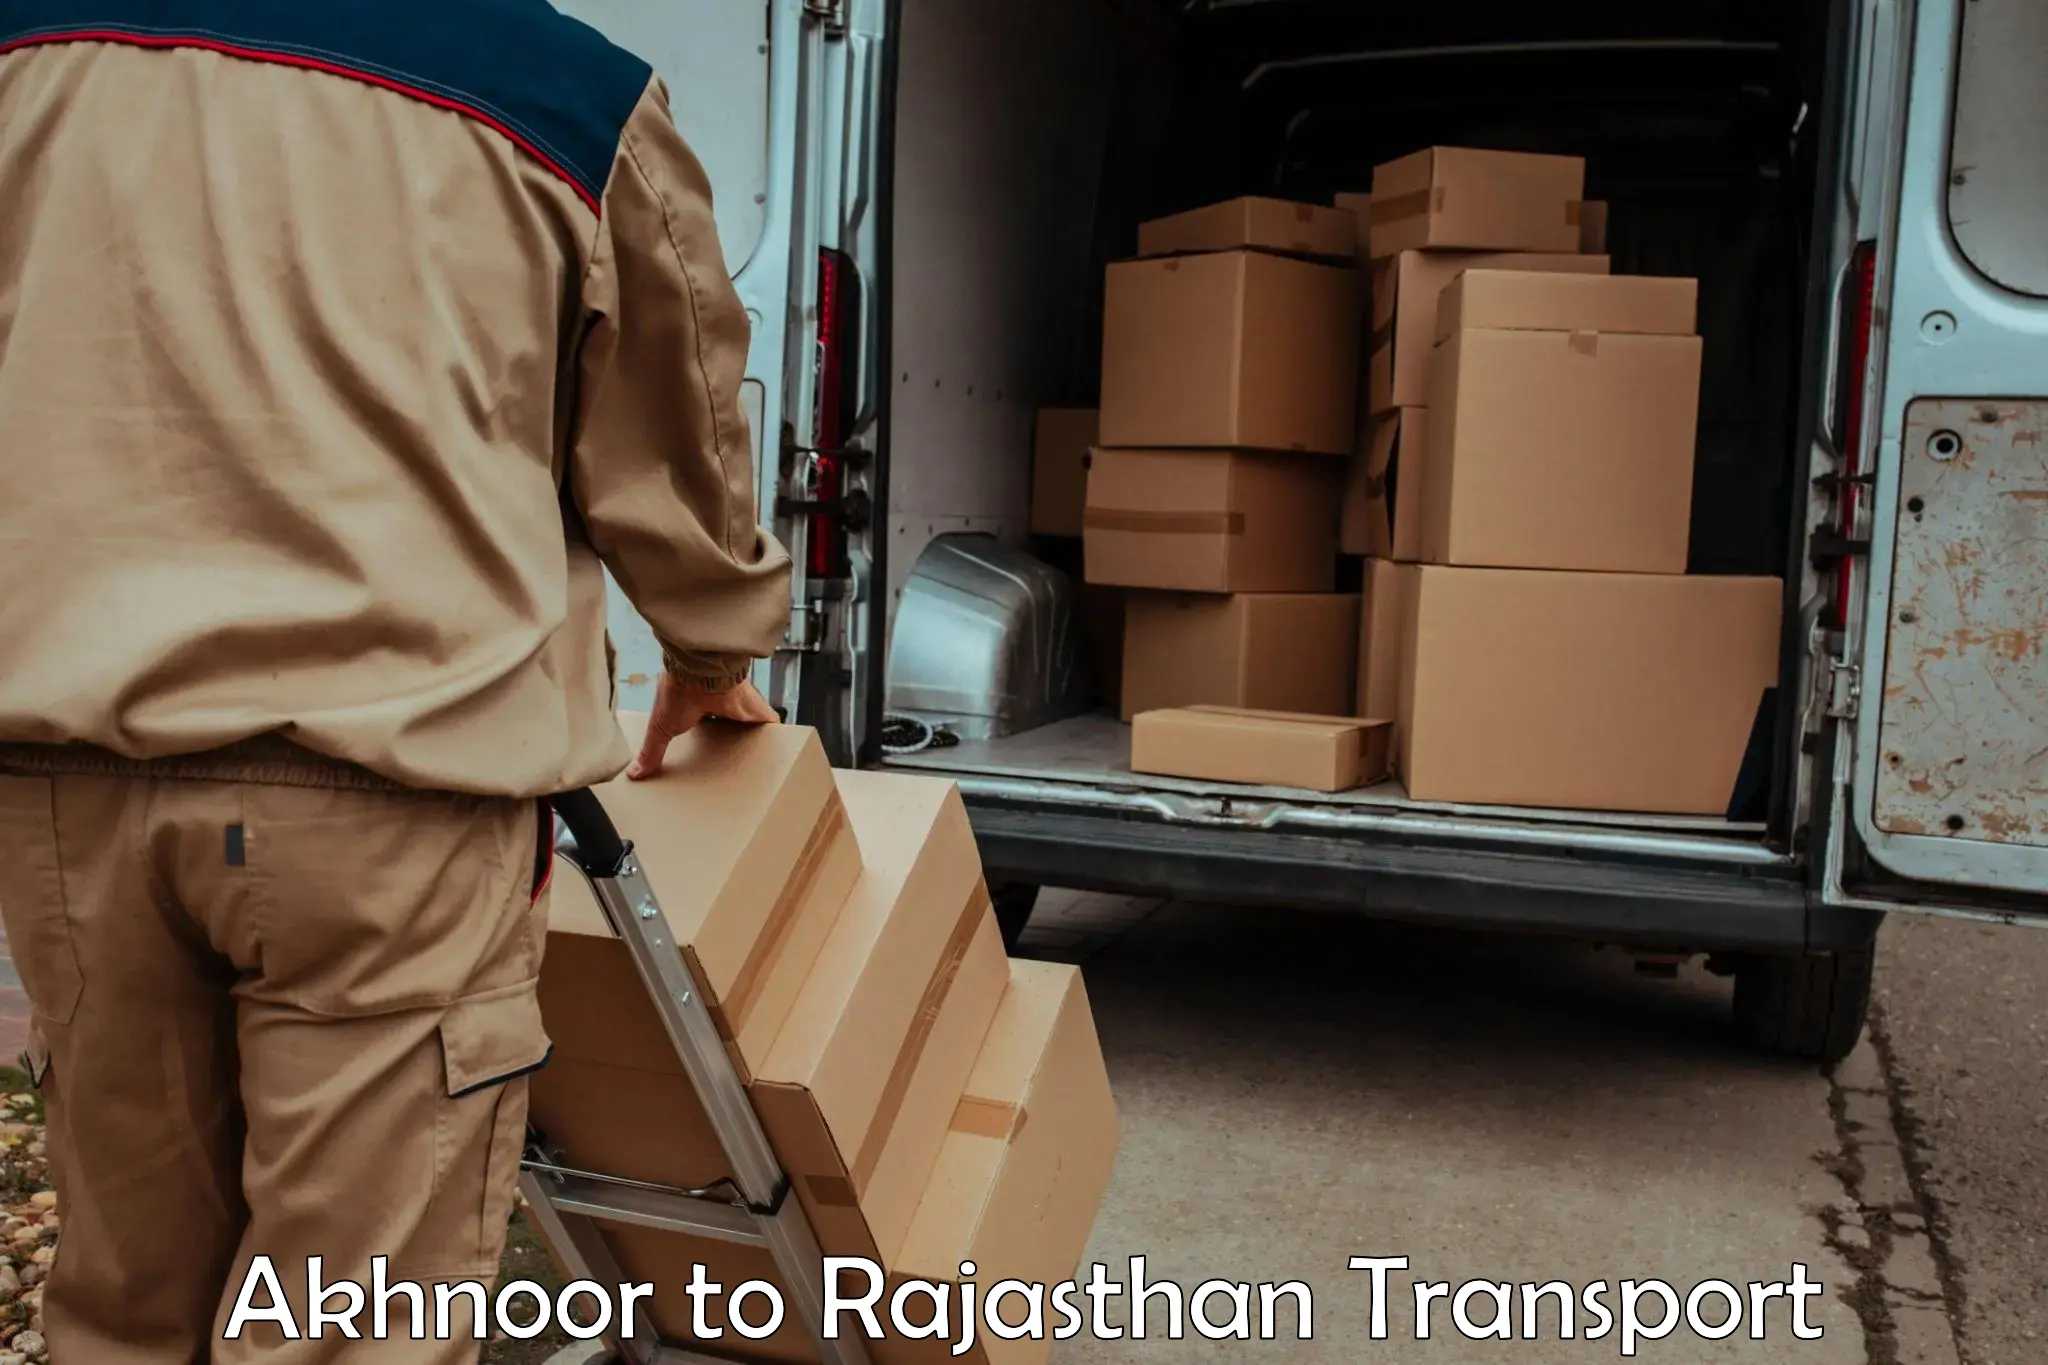 Two wheeler parcel service Akhnoor to Dholpur